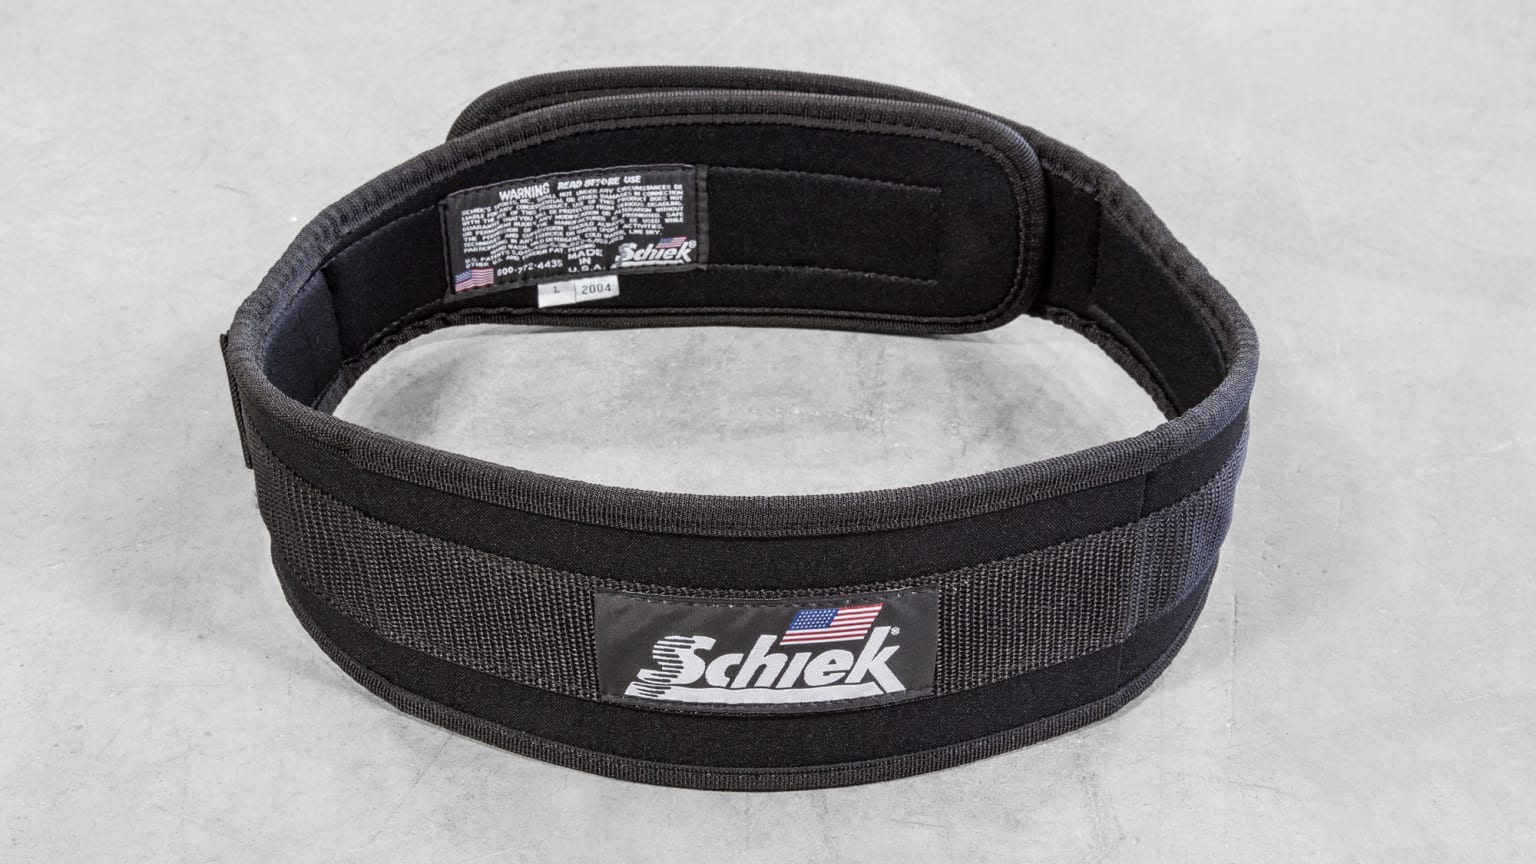 SCHIEK 2004 4-3/4" Original Nylon Weight Lifting Belt 